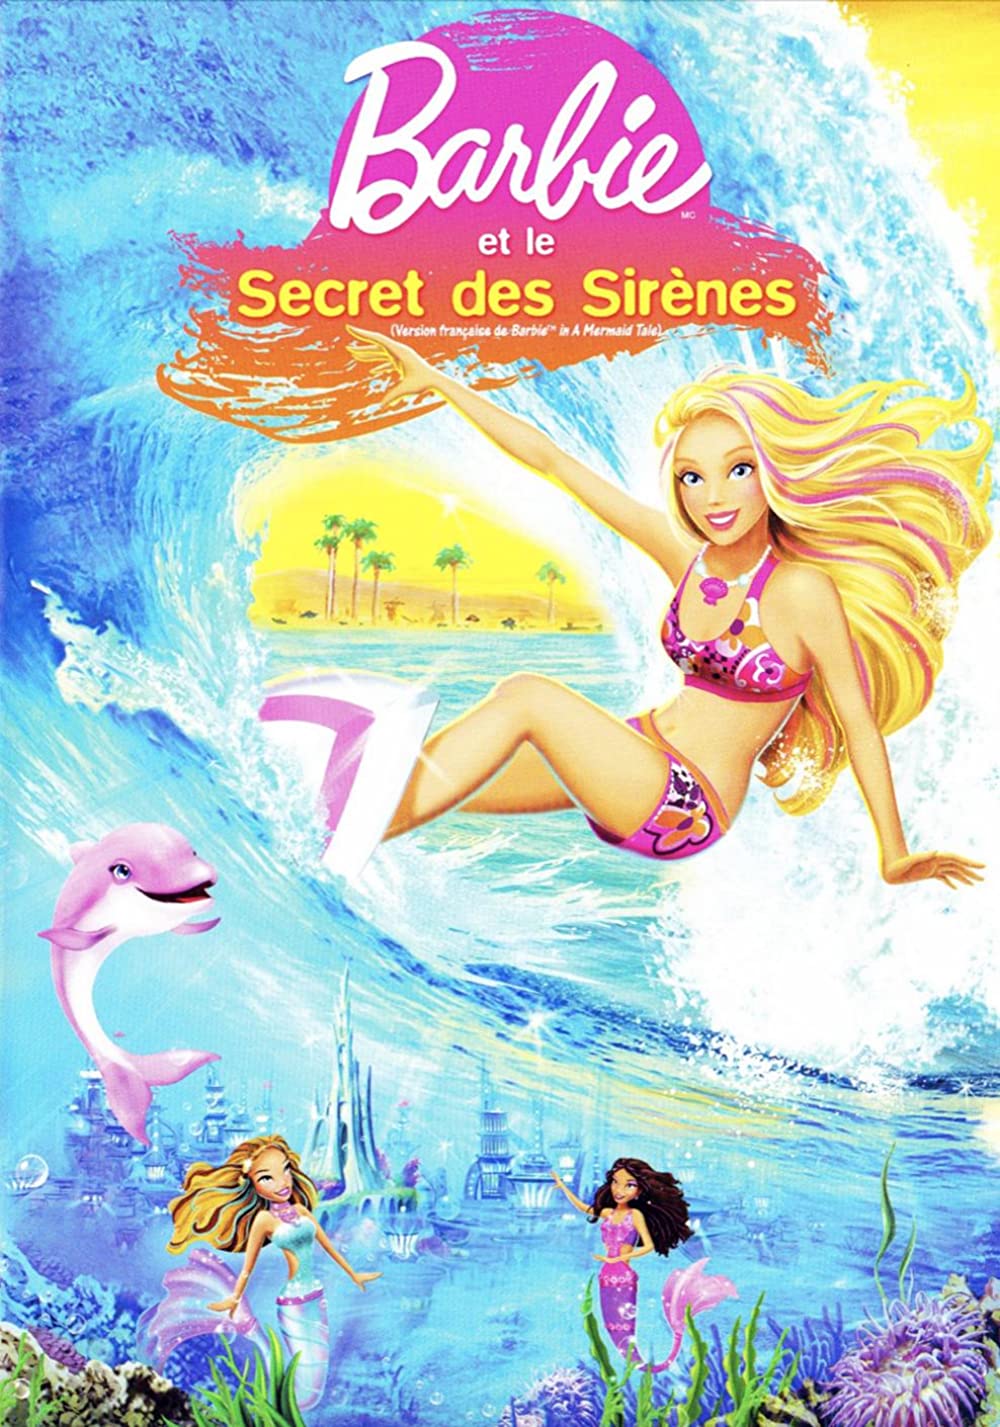 Download Barbie in a Mermaid Tale Movie | Barbie In A Mermaid Tale Movie Review